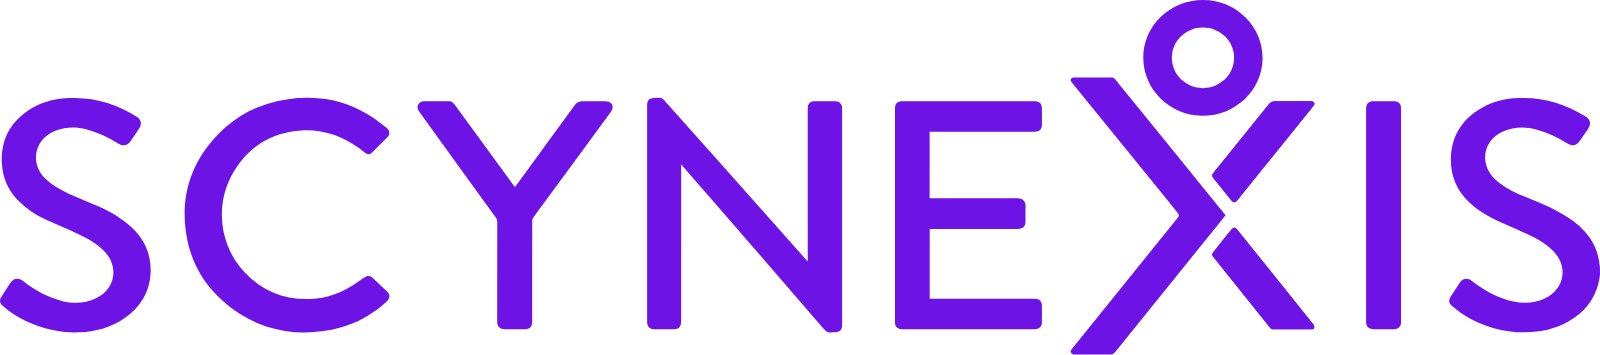 SCYNEXIS logo large (transparent PNG)